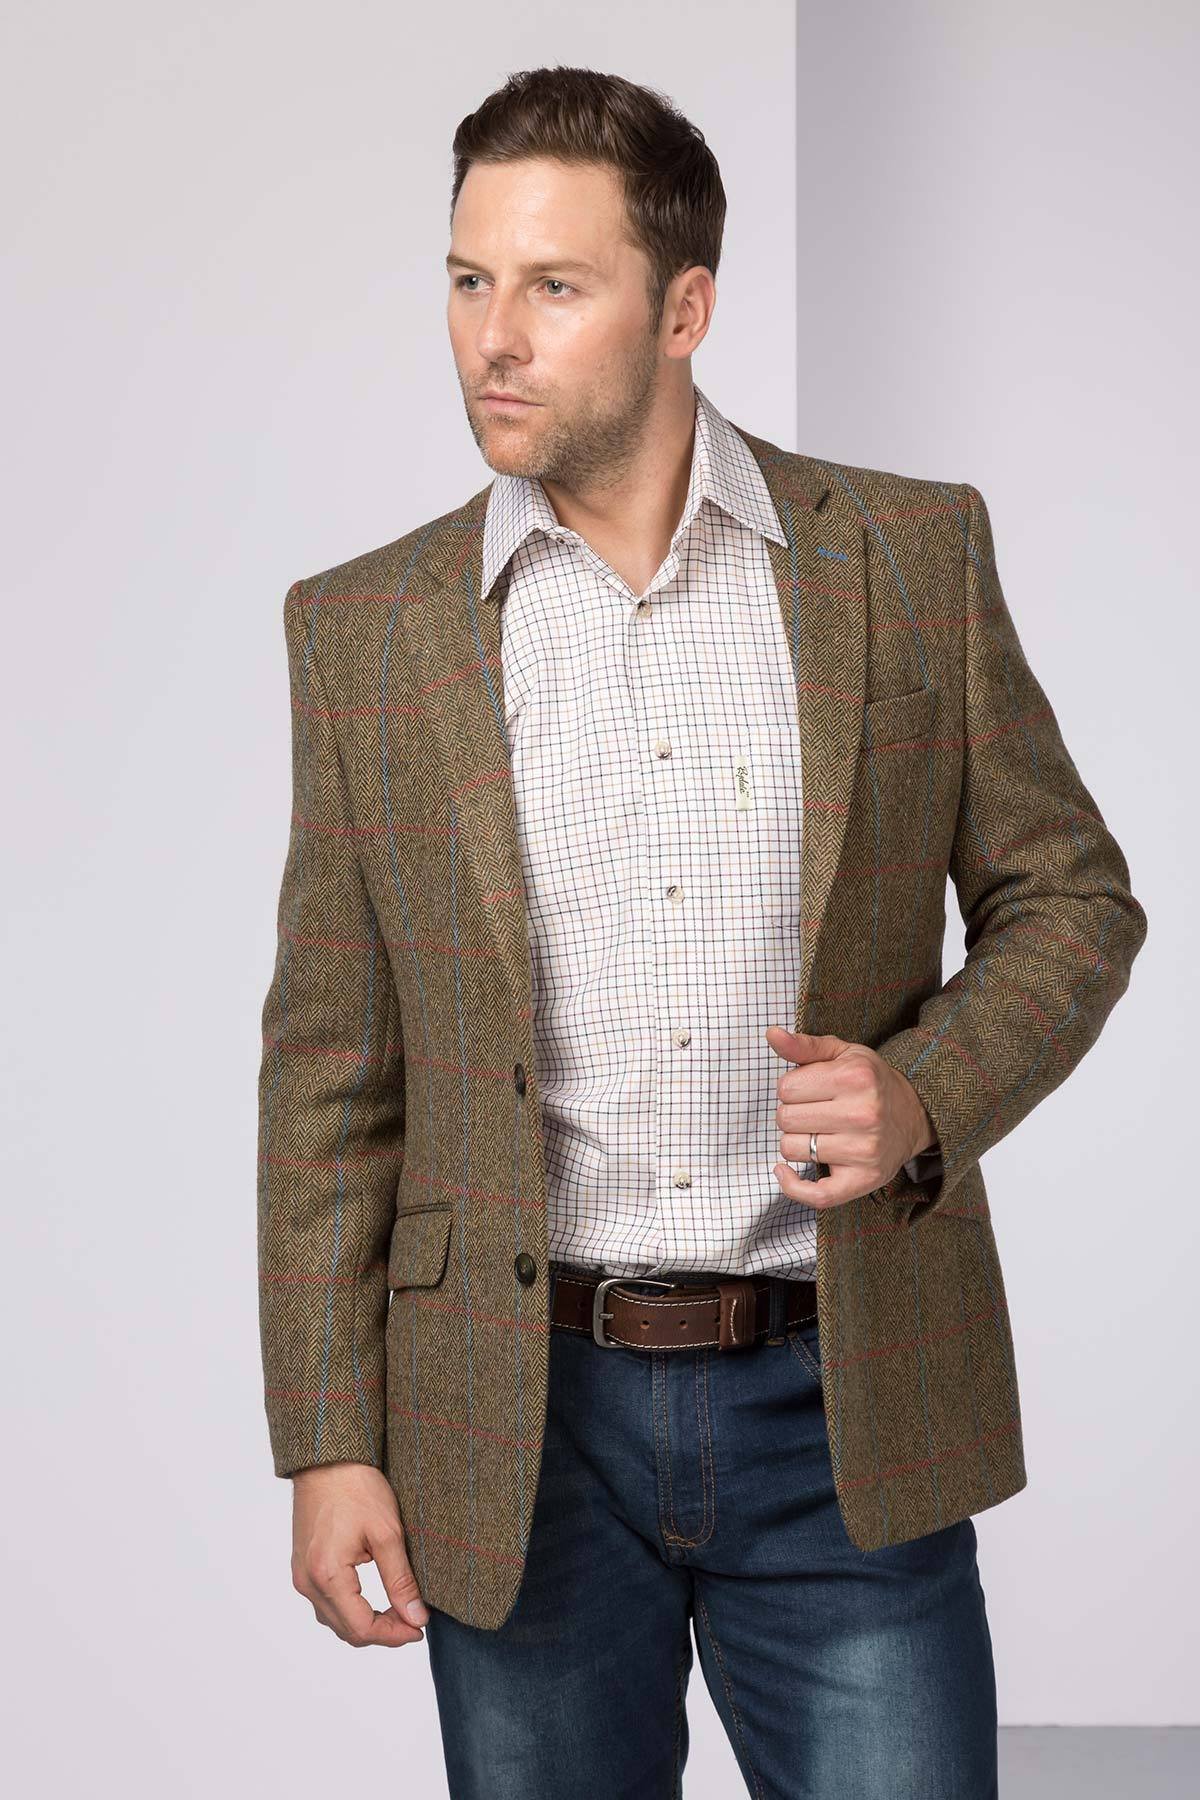 Mens Fitted Tweed Blazer UK | Herringbone Tweed Jacket - Rydale